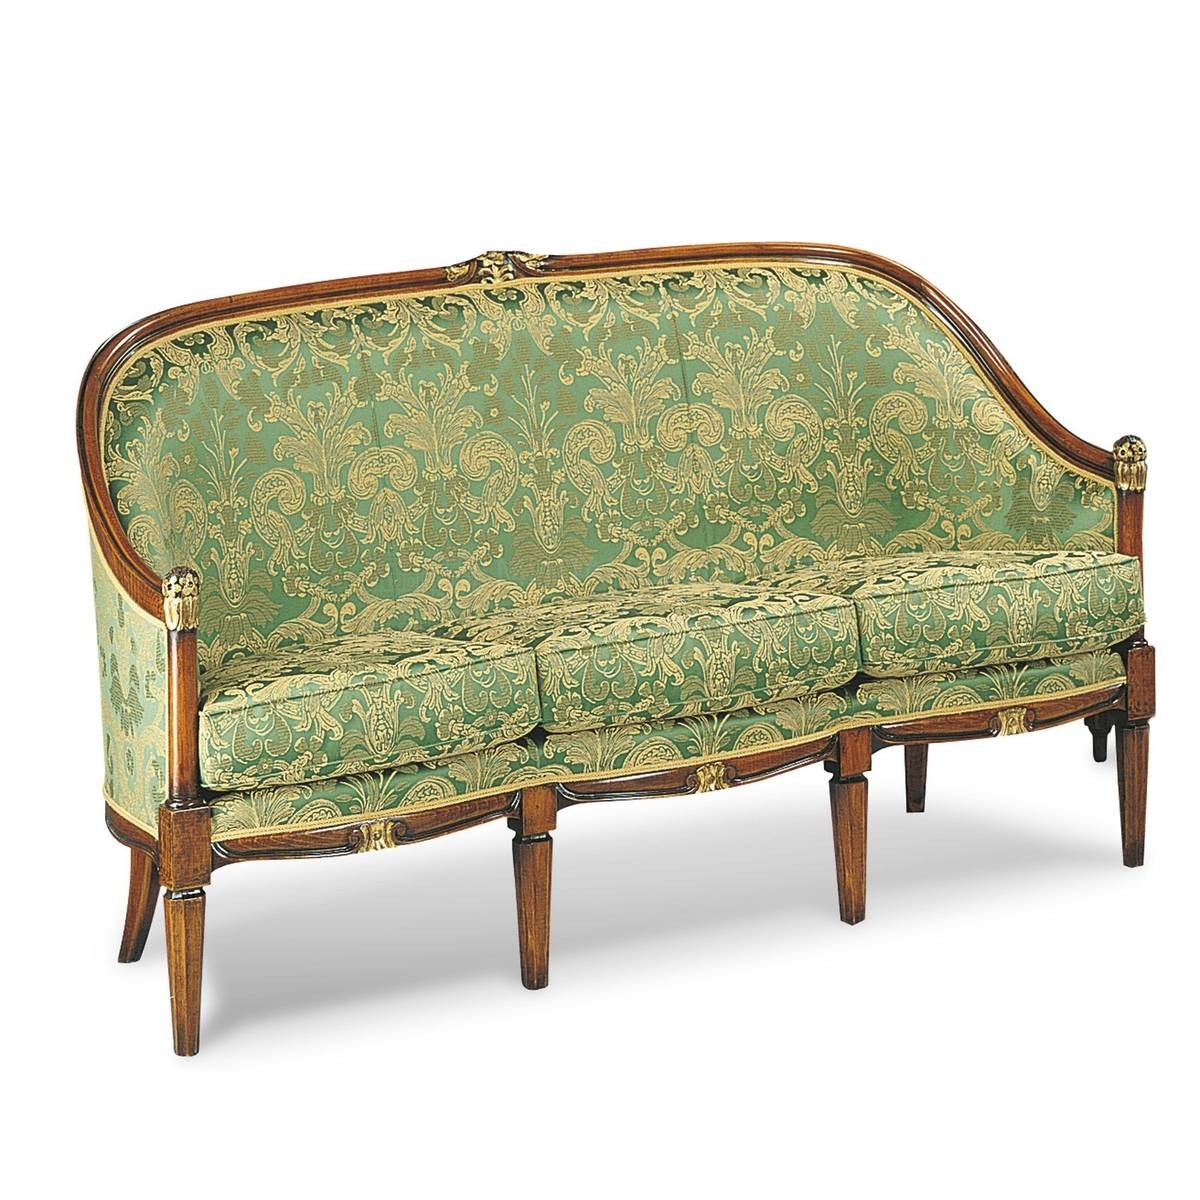 Прямой диван The Upholstery/D9 из Италии фабрики FRANCESCO MOLON